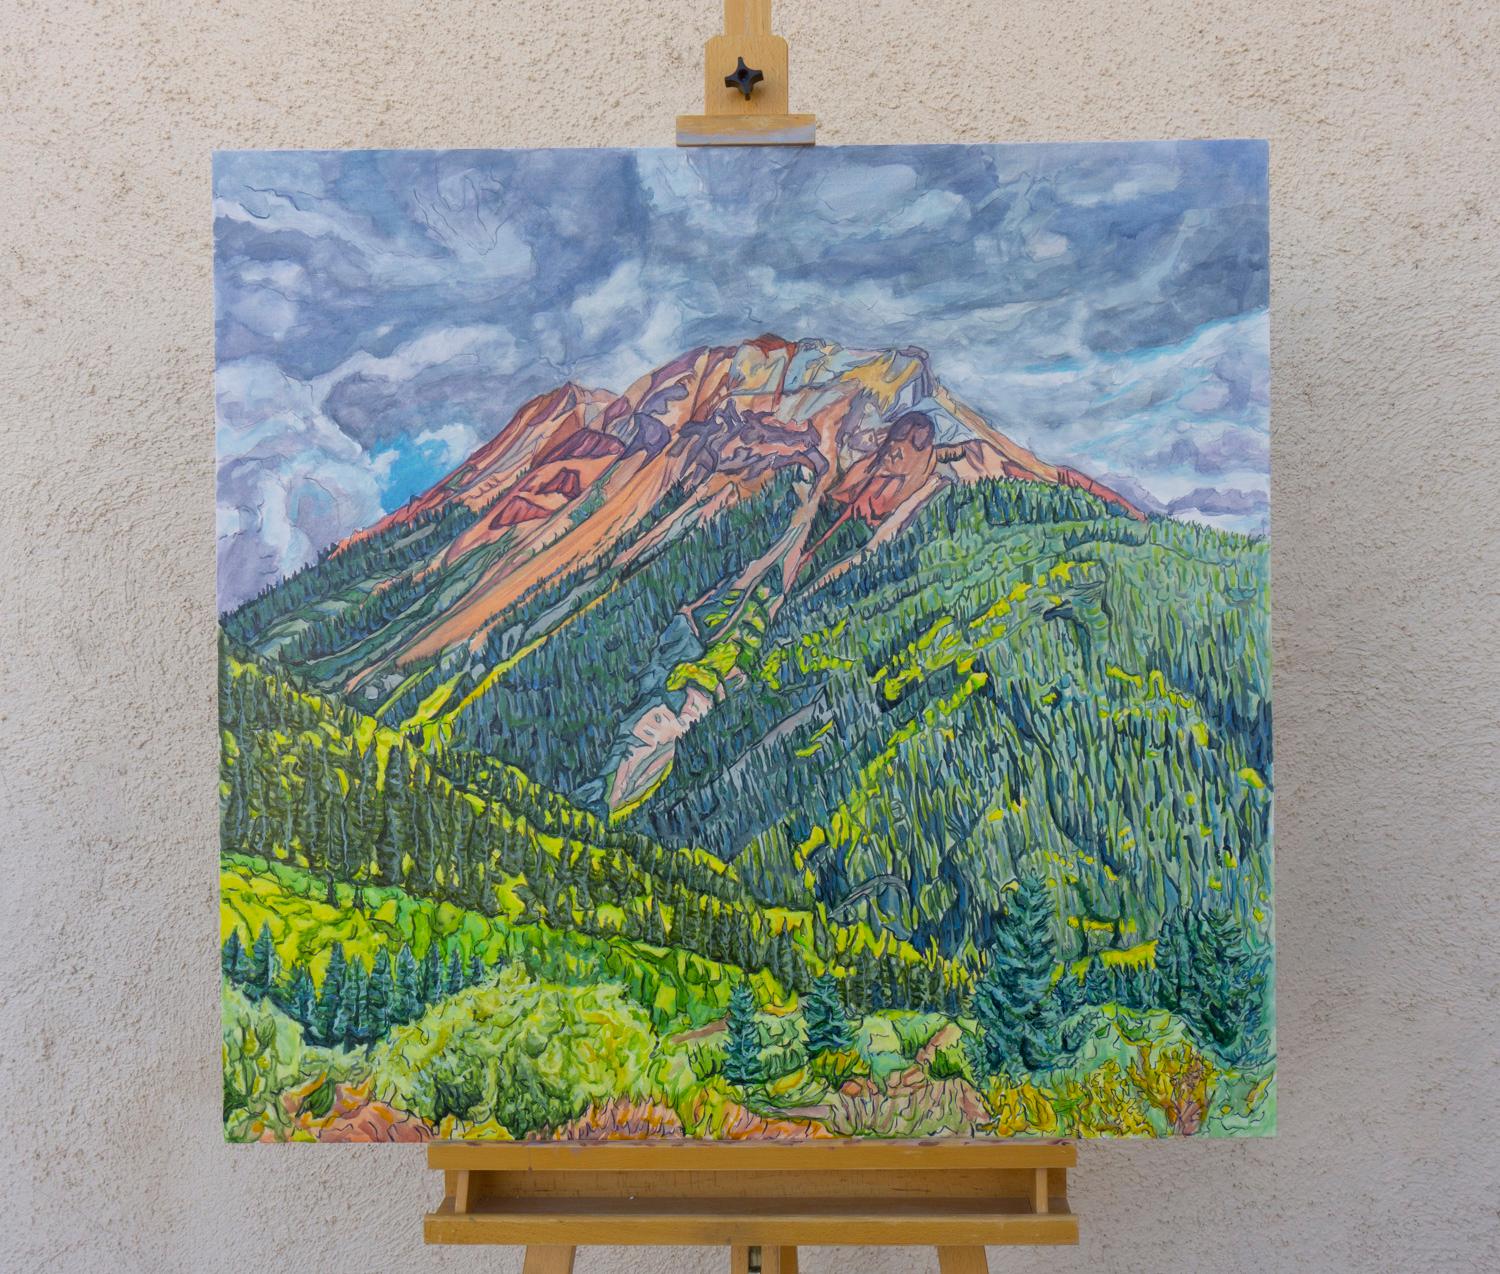 <p>Kommentare des Künstlers<br>Ein faszinierender Blick auf den Red Mountain Pass in der Herbstsaison mit satten Grün- und Gelbtönen. Die dunklen, wechselnden Wolken und die sich drehenden Espen verleihen den hoch aufragenden roten Gipfeln eine